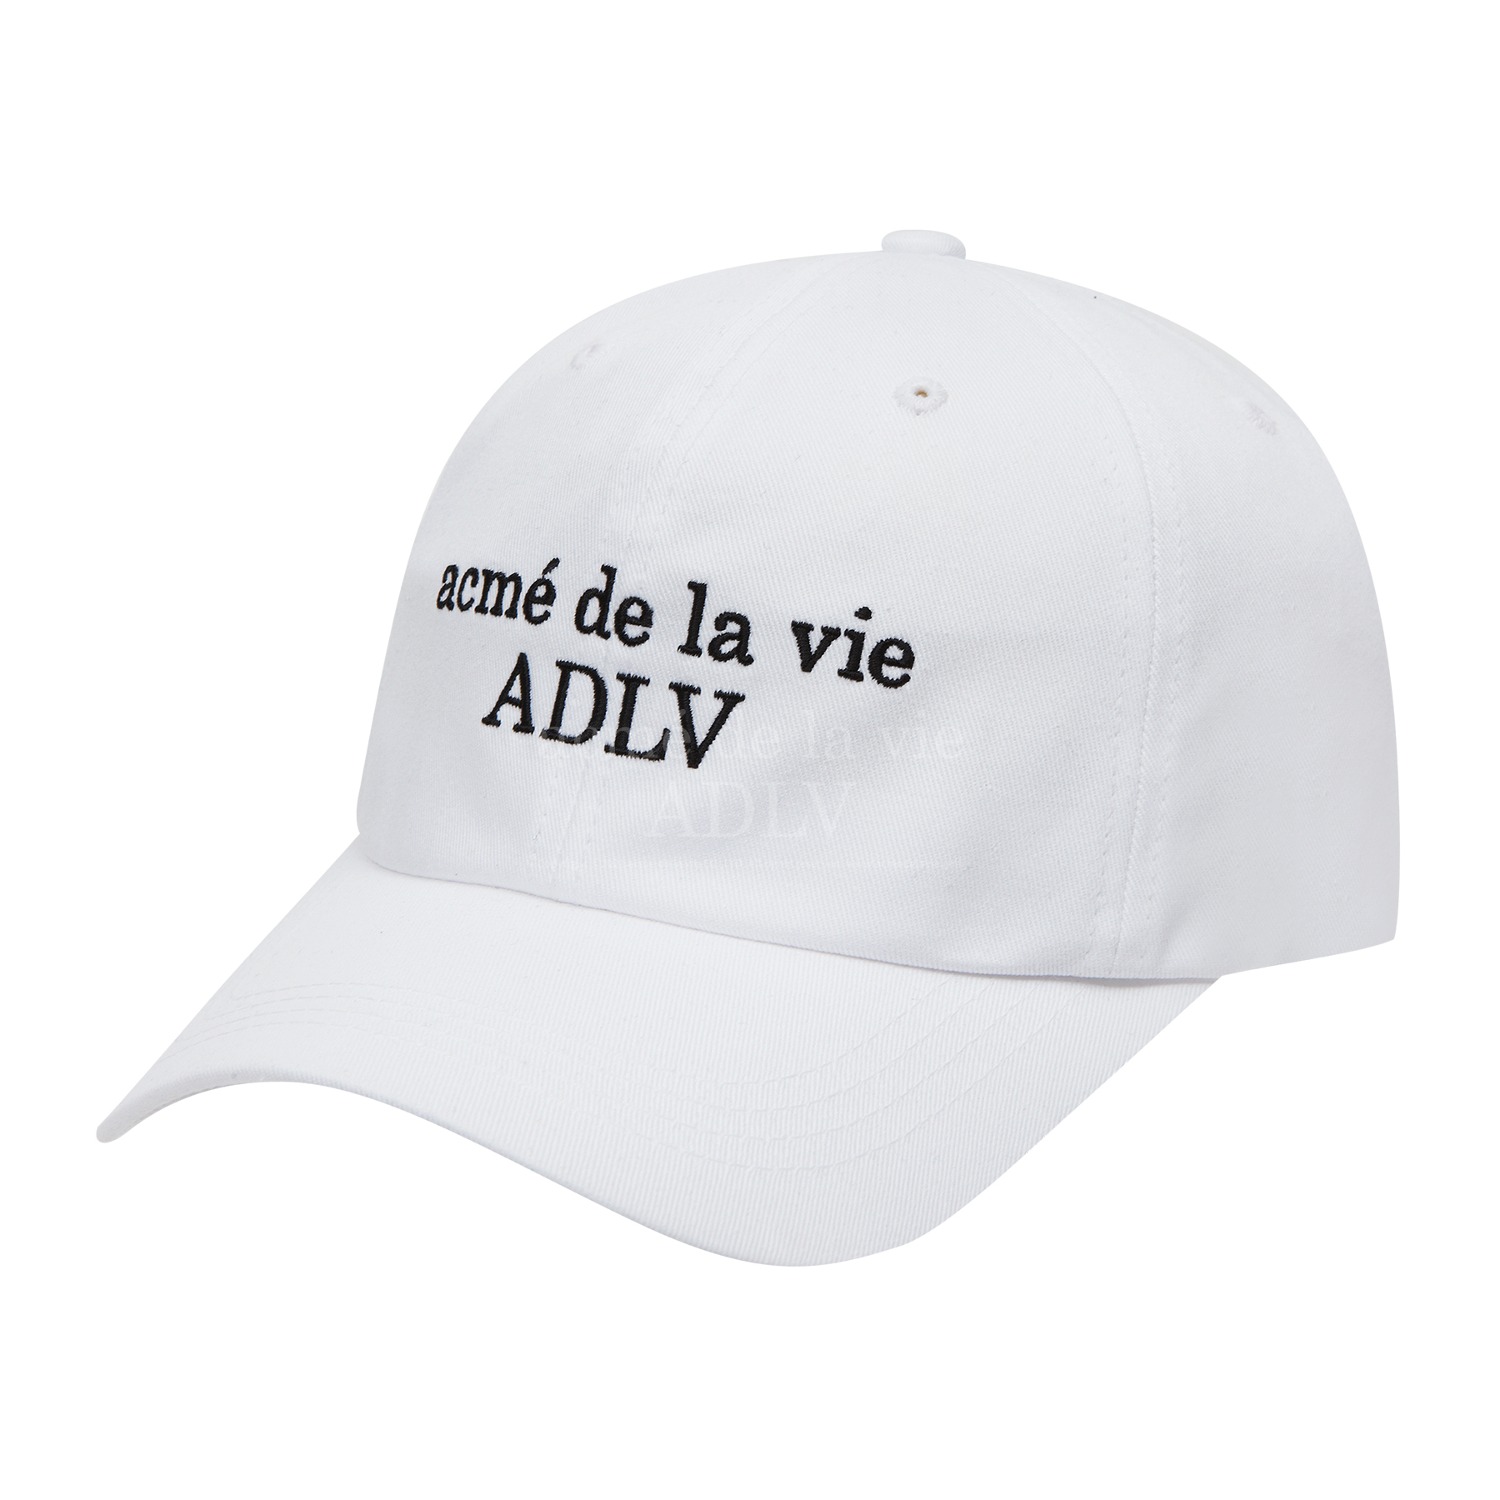 [아크메드라비] ADLV BASIC BALL CAP WHITE,아크메드라비 acmedelavie,아크메드라비